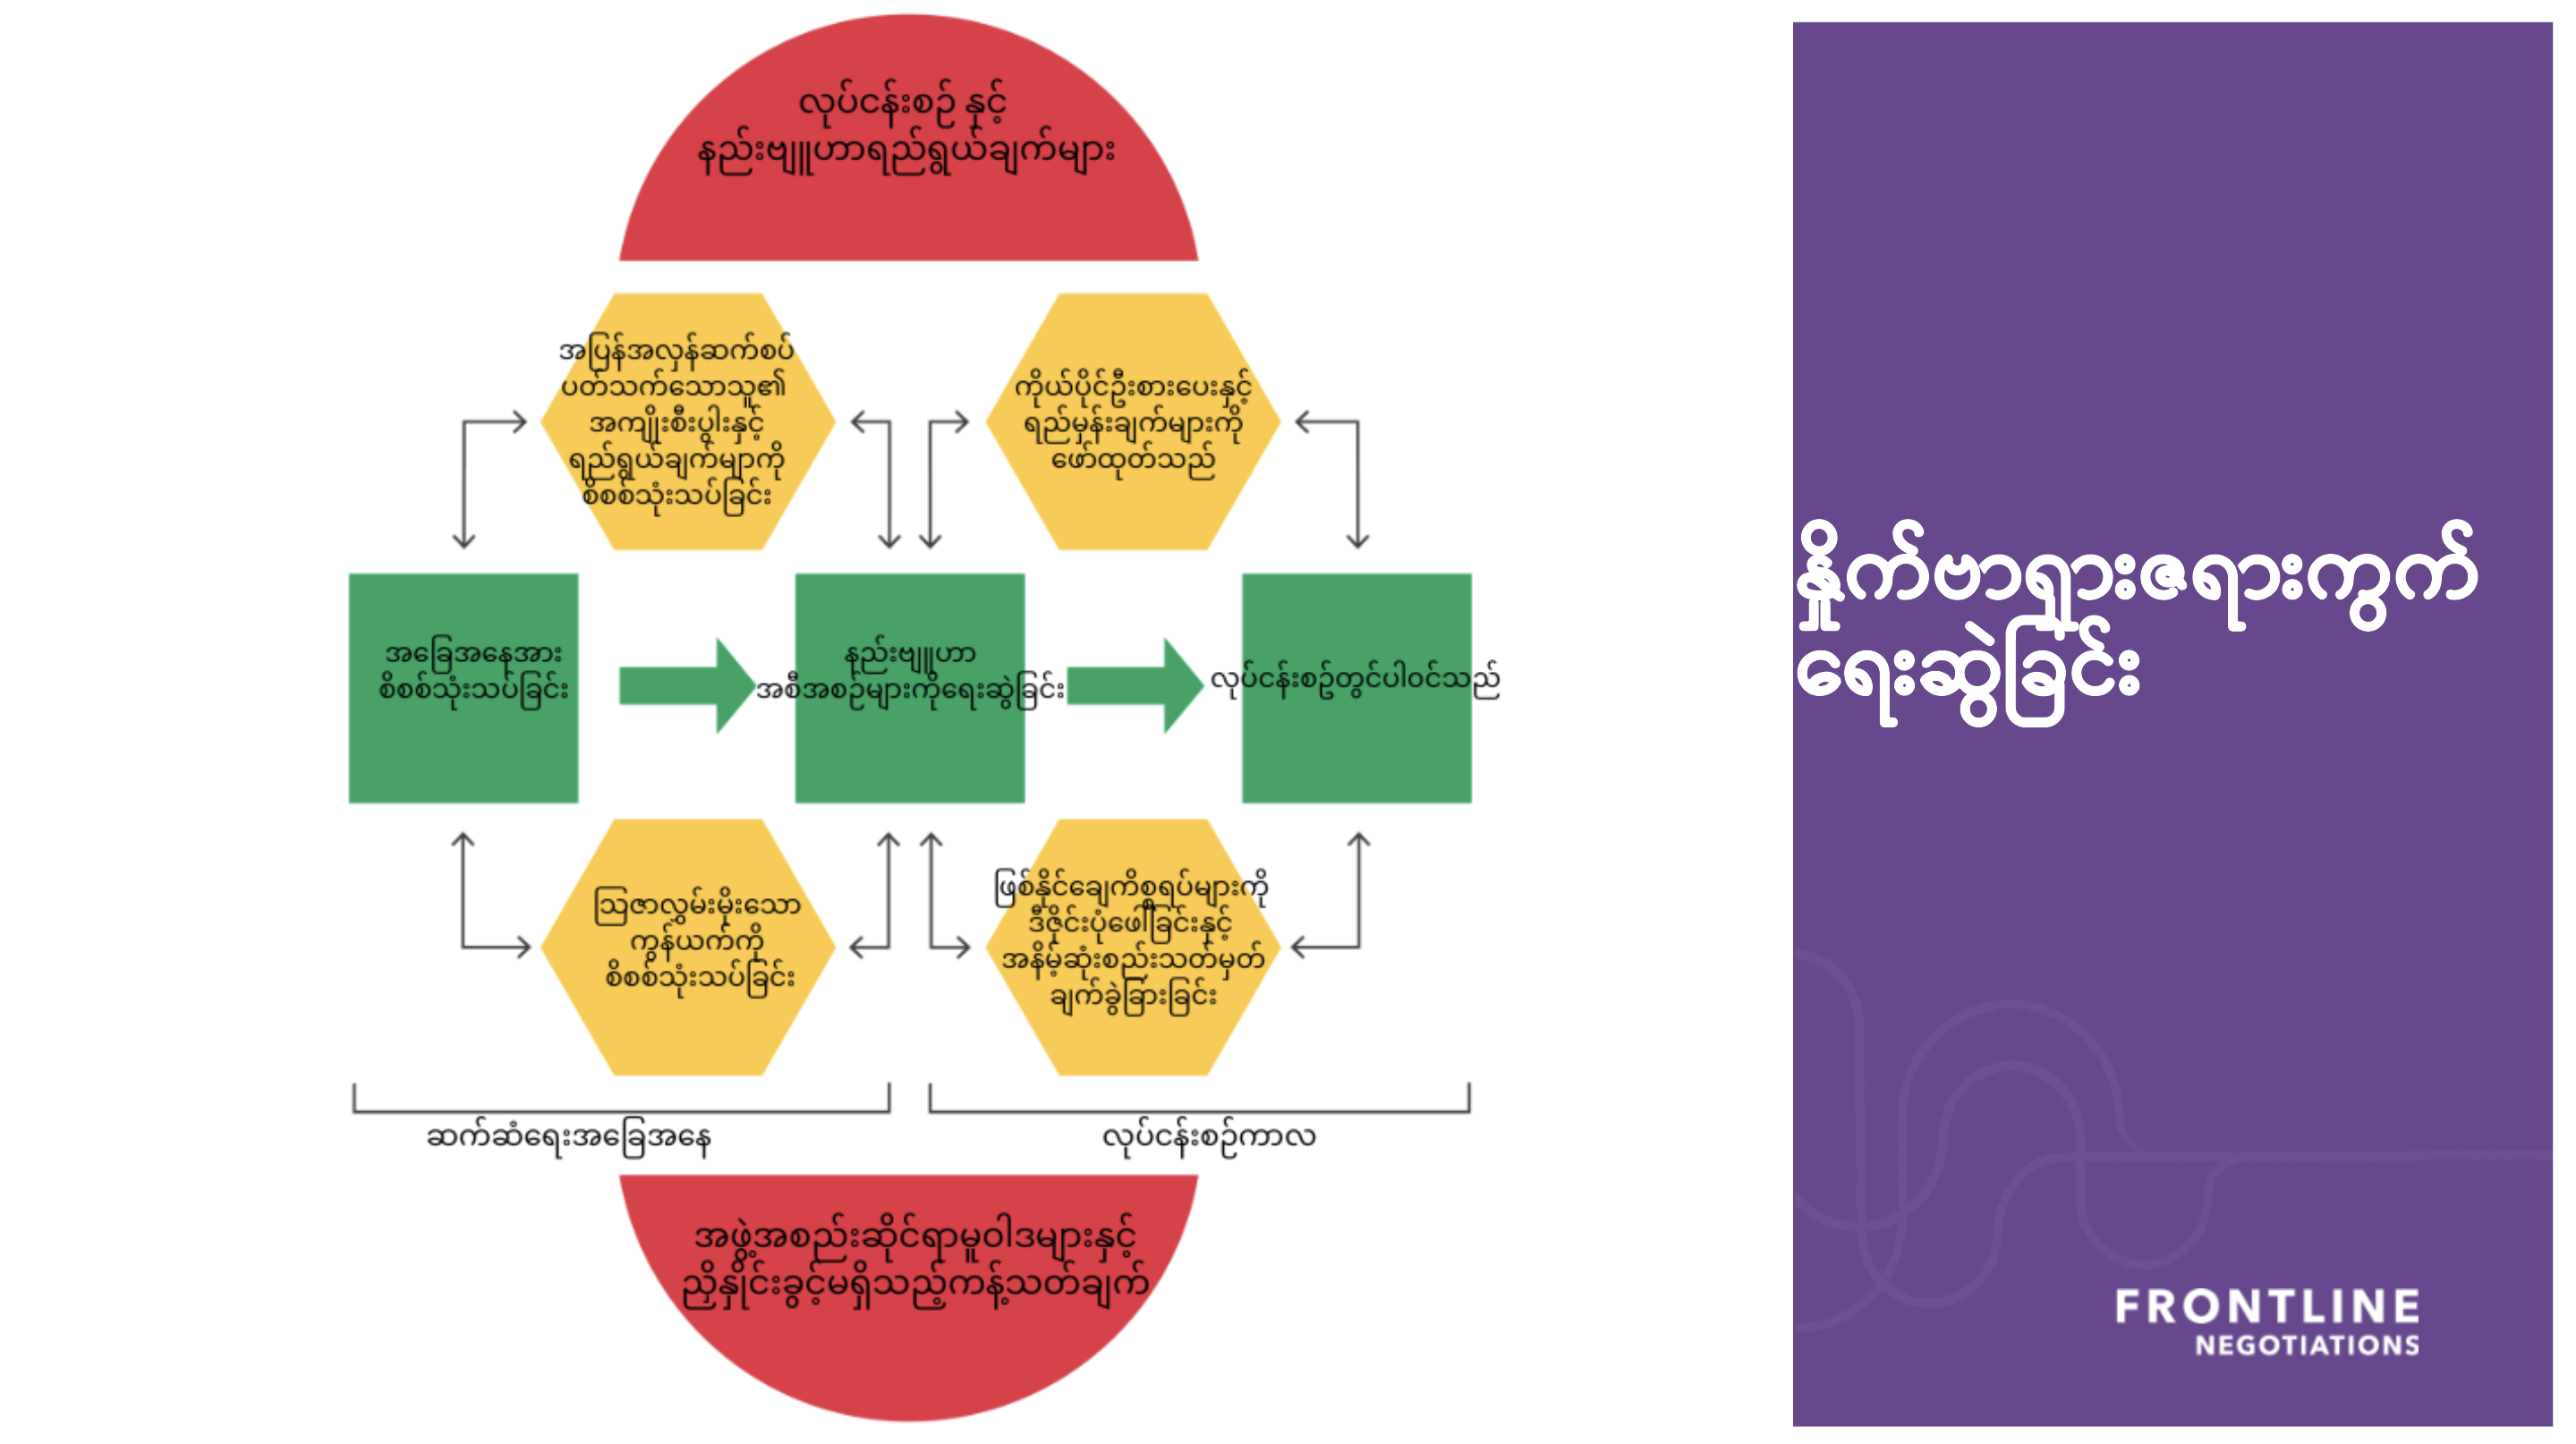 Les humanitaires aident leurs pairs à développer leur compétences de négociation en traduisant en birman un diagramme expliquant les différentes phases d'un processus de négociation.